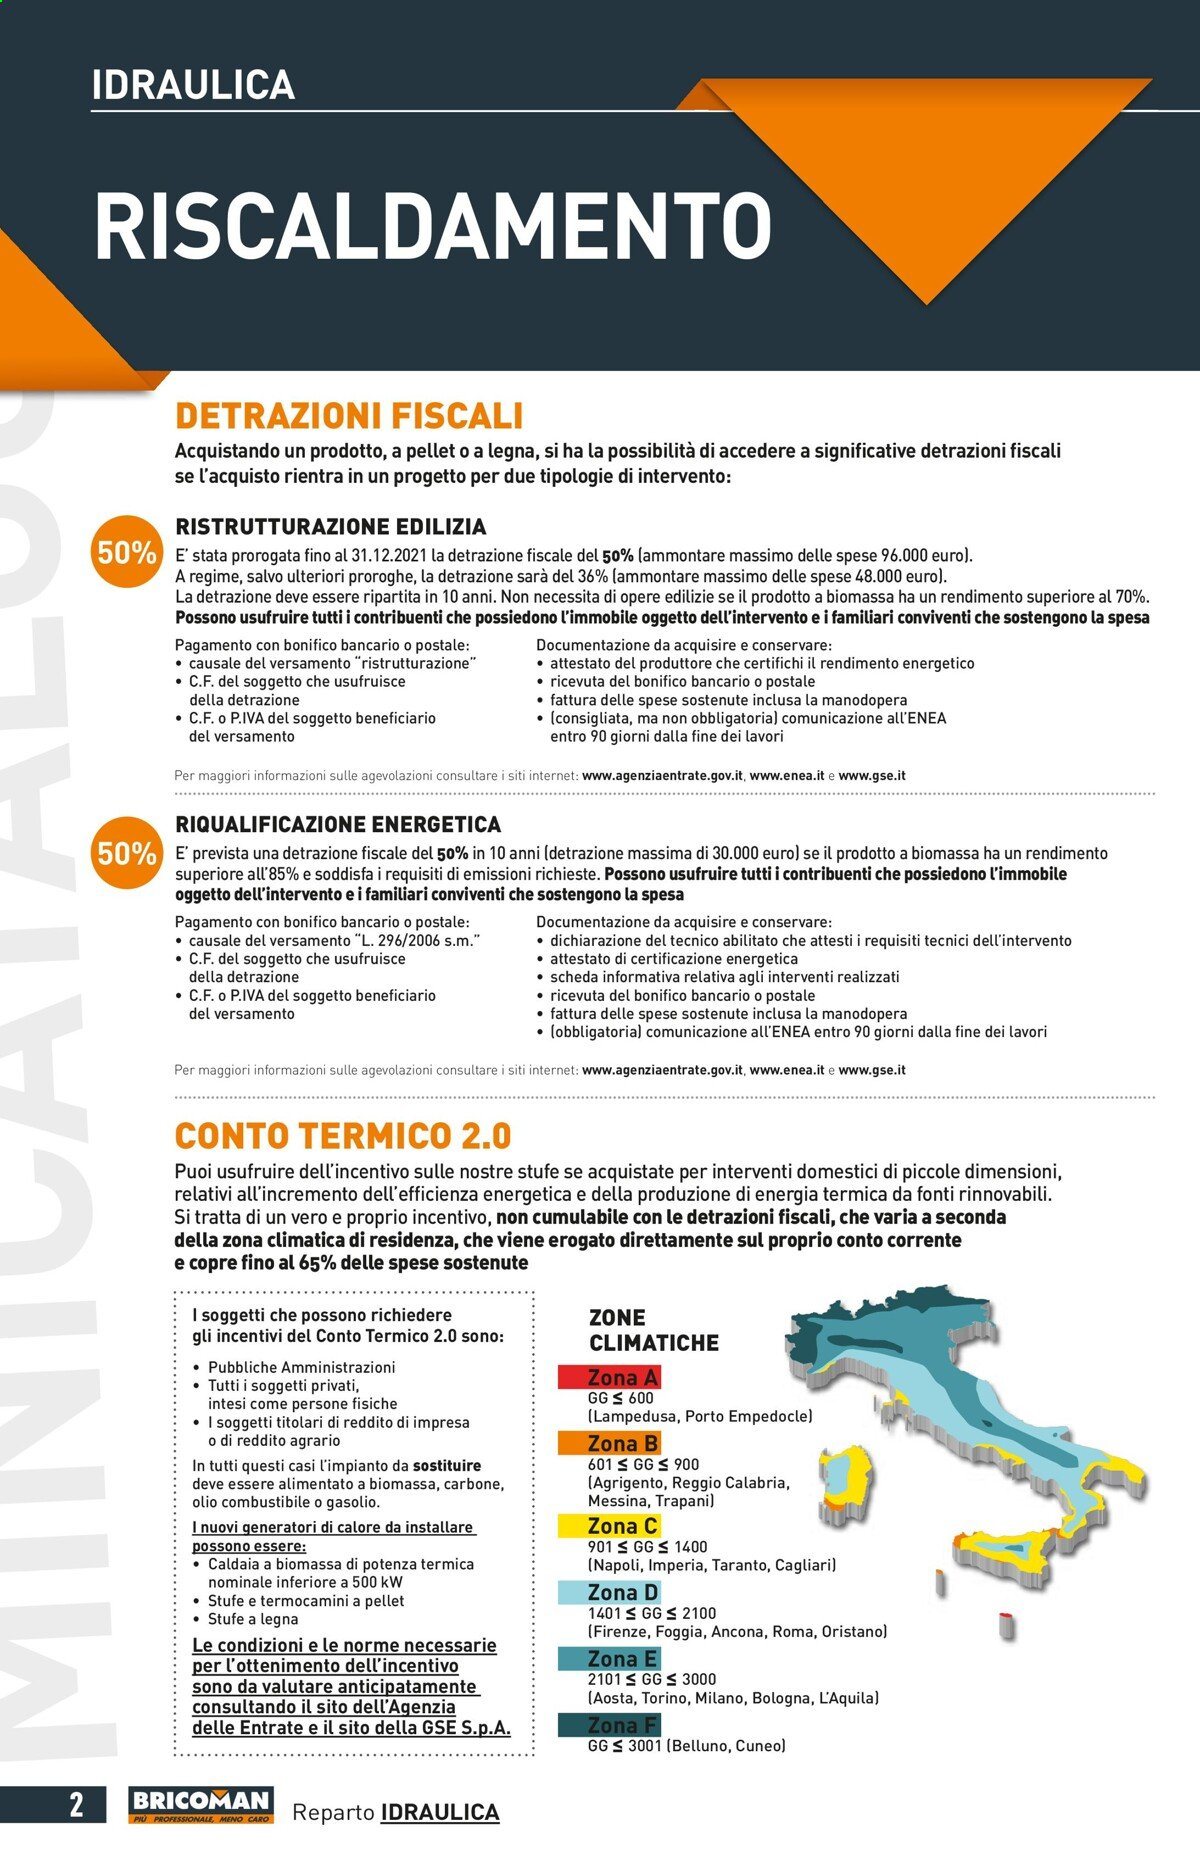 Volantino Bricoman - 26/8/2021 - 29/9/2021 - Prodotti in offerta - olio, pellet. Pagina 2.